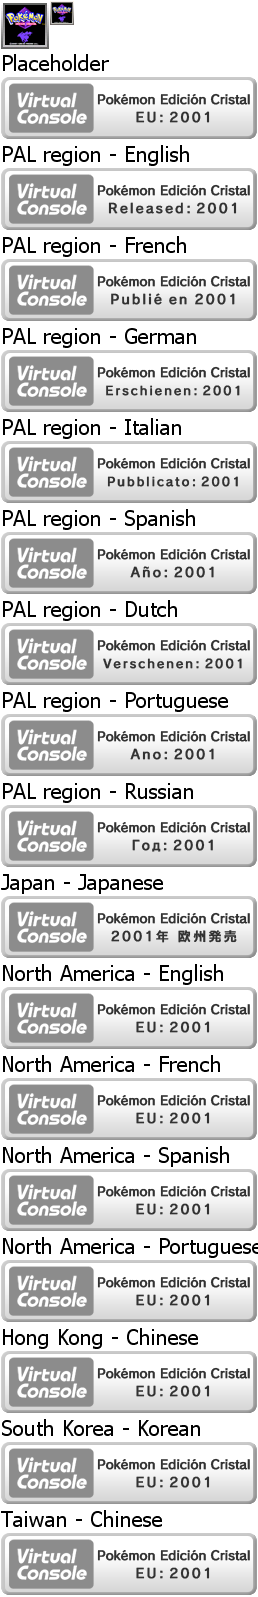 Virtual Console - Pokémon Edición Cristal